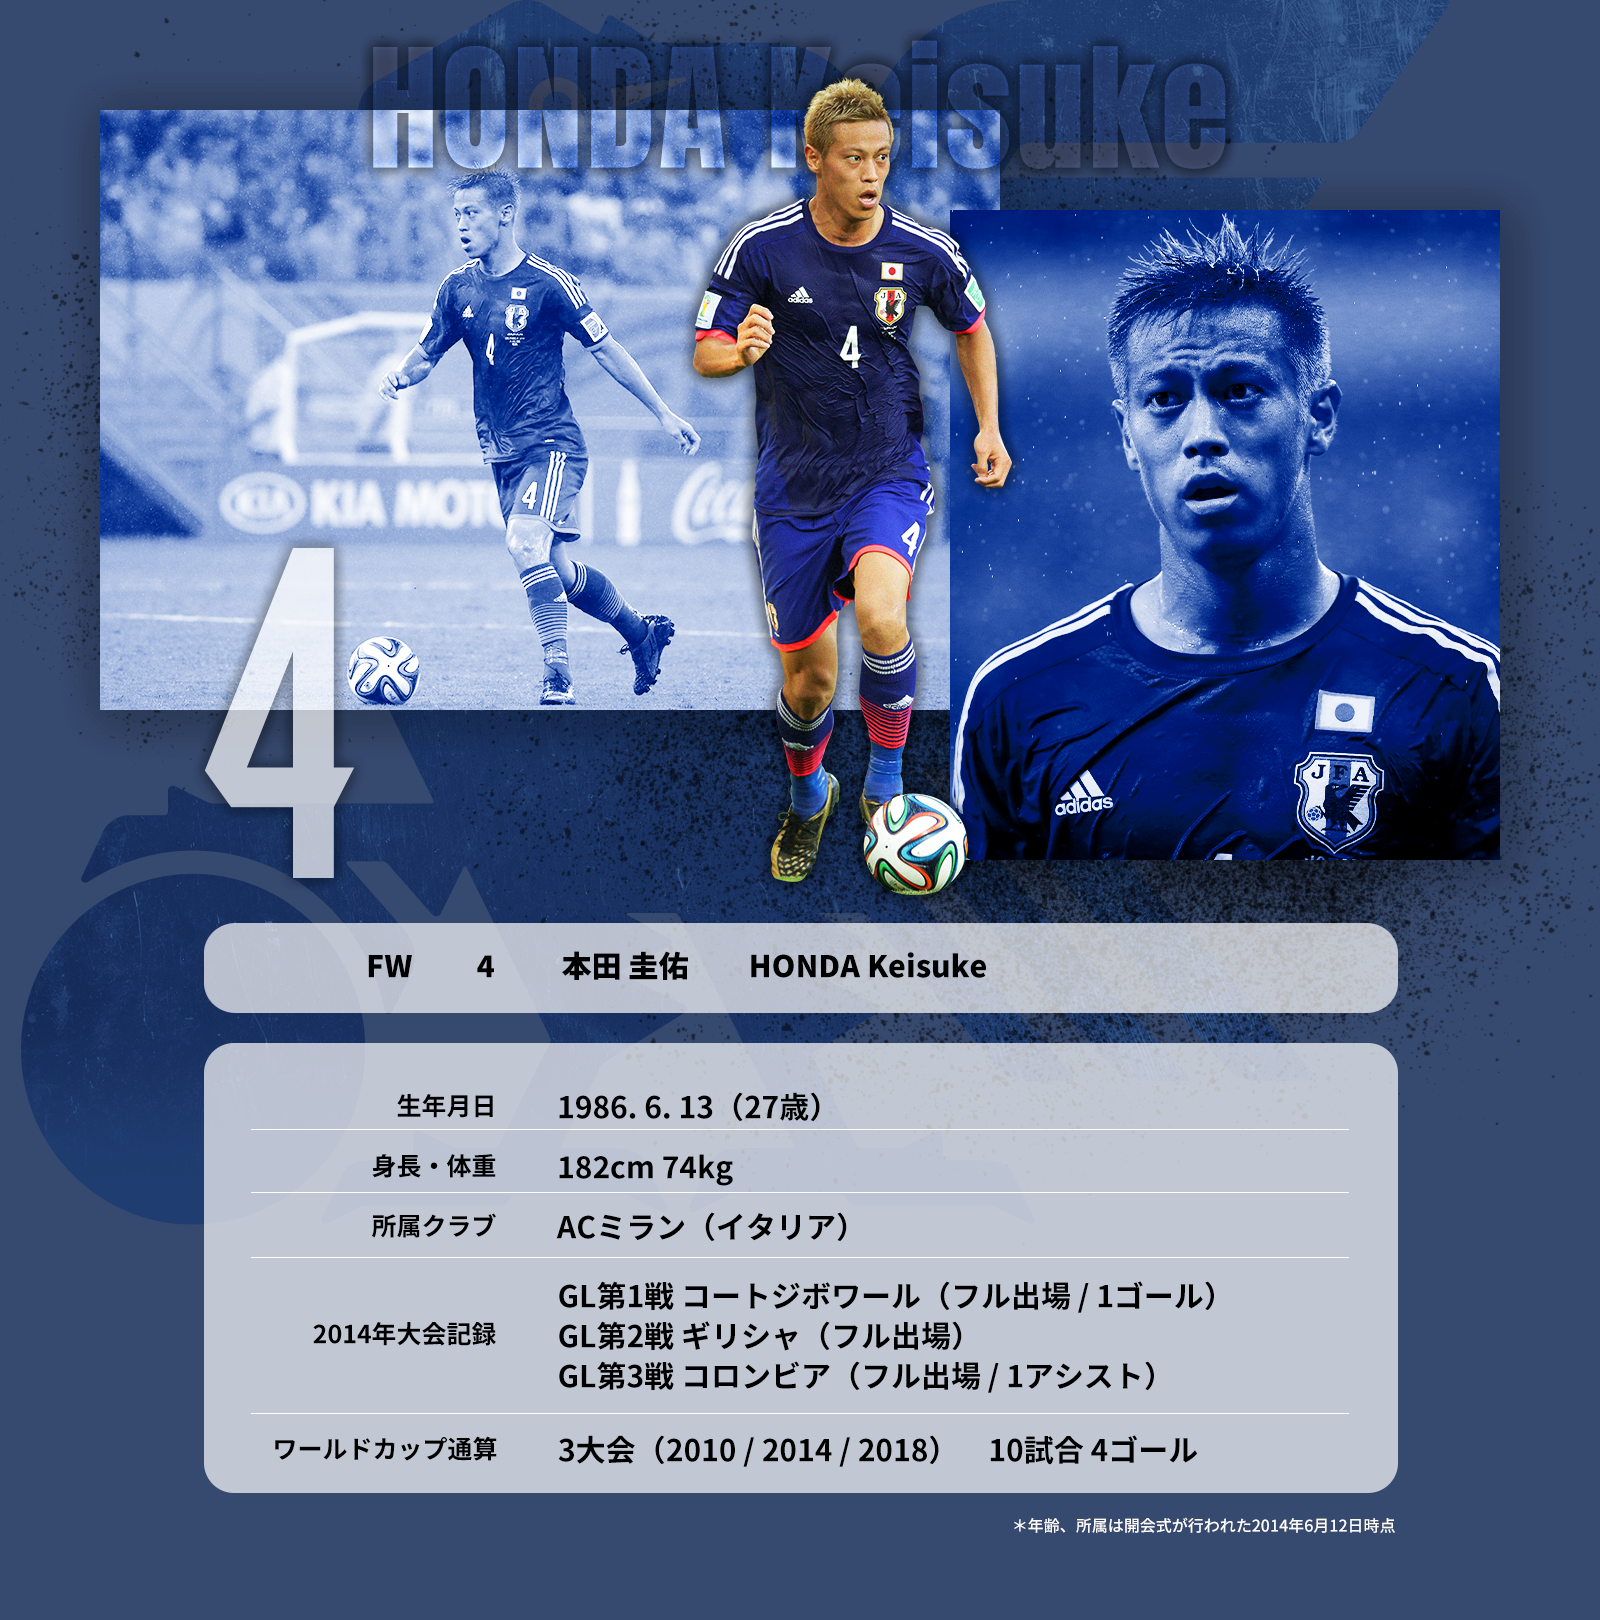  本田圭佑 ギリシャ戦 日本代表 ユニフォーム 2014年 ブラジルW杯